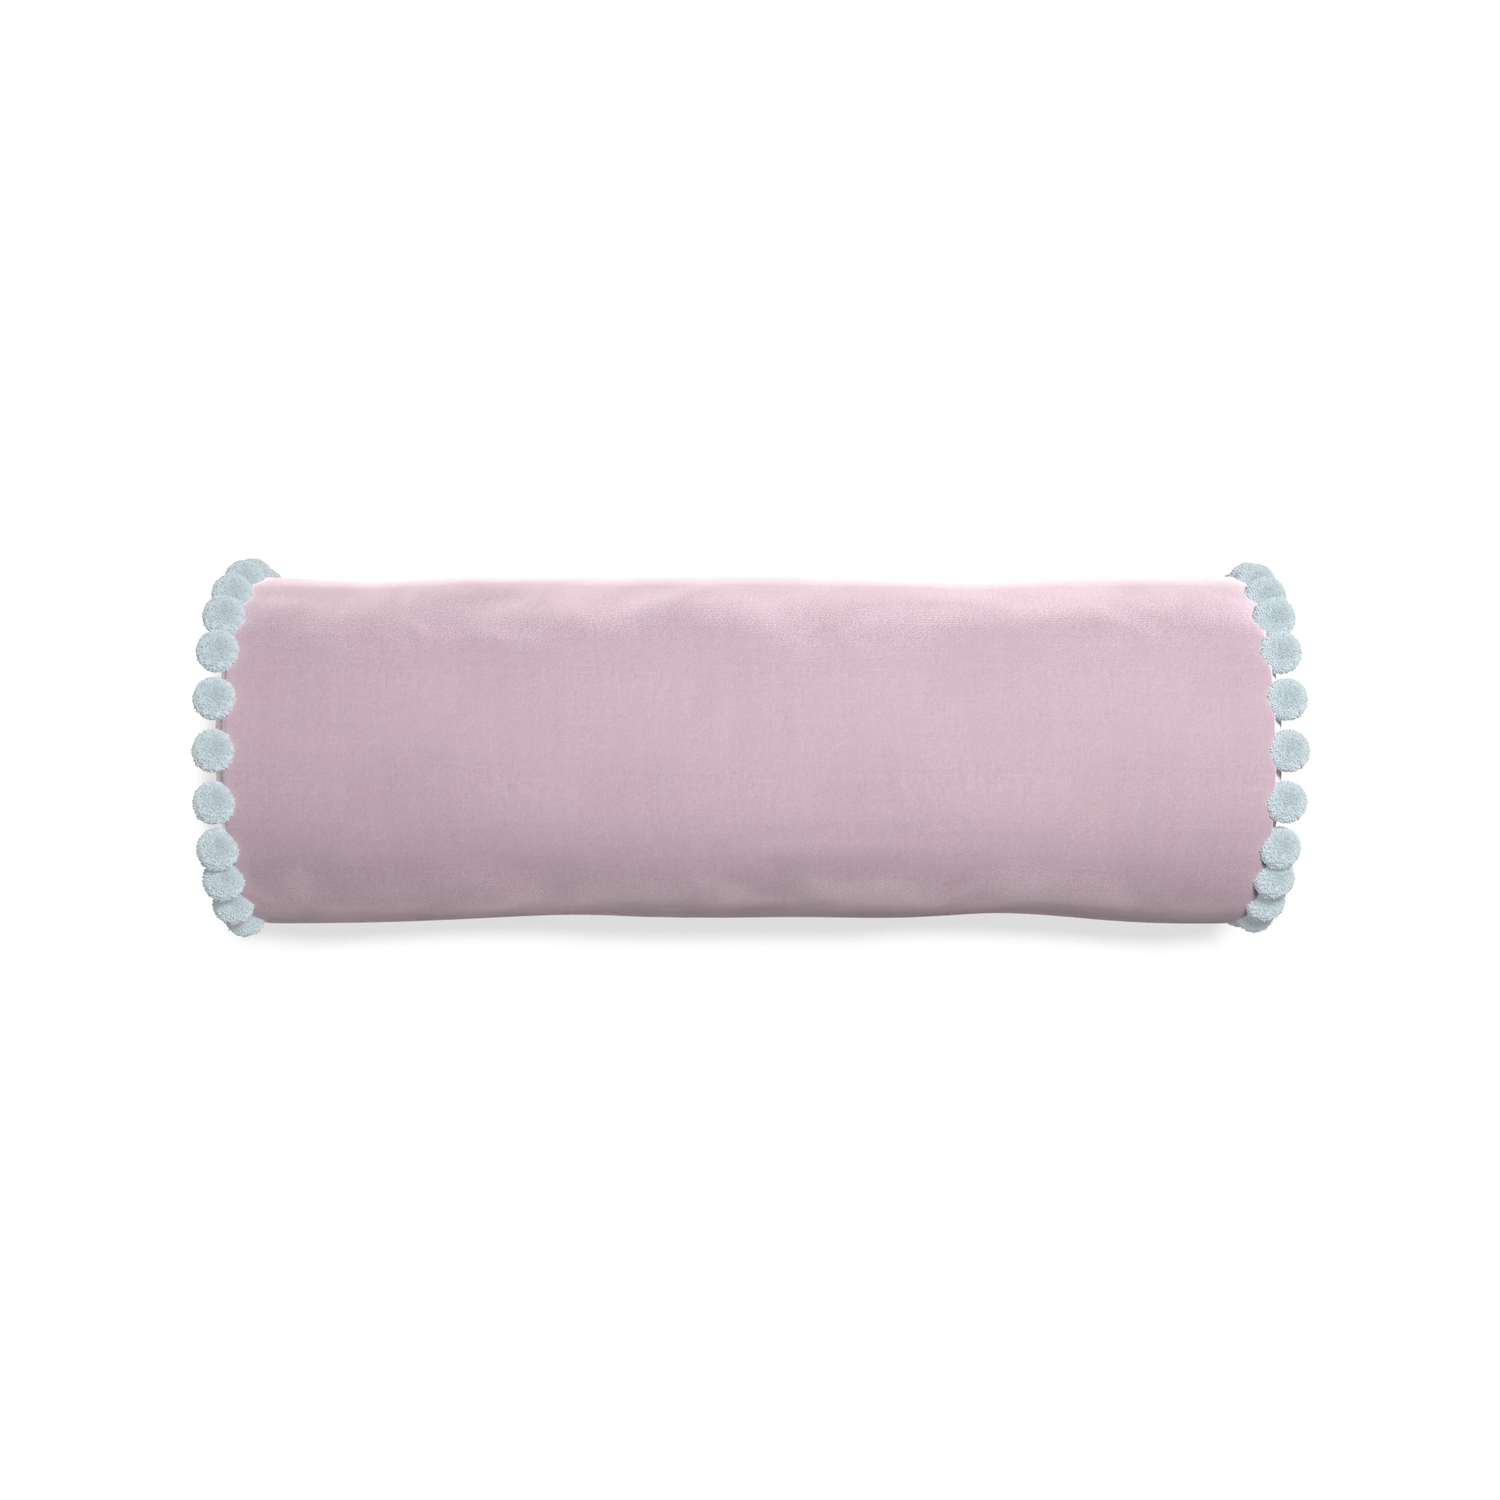 bolster lilac velvet pillow with light blue pom poms